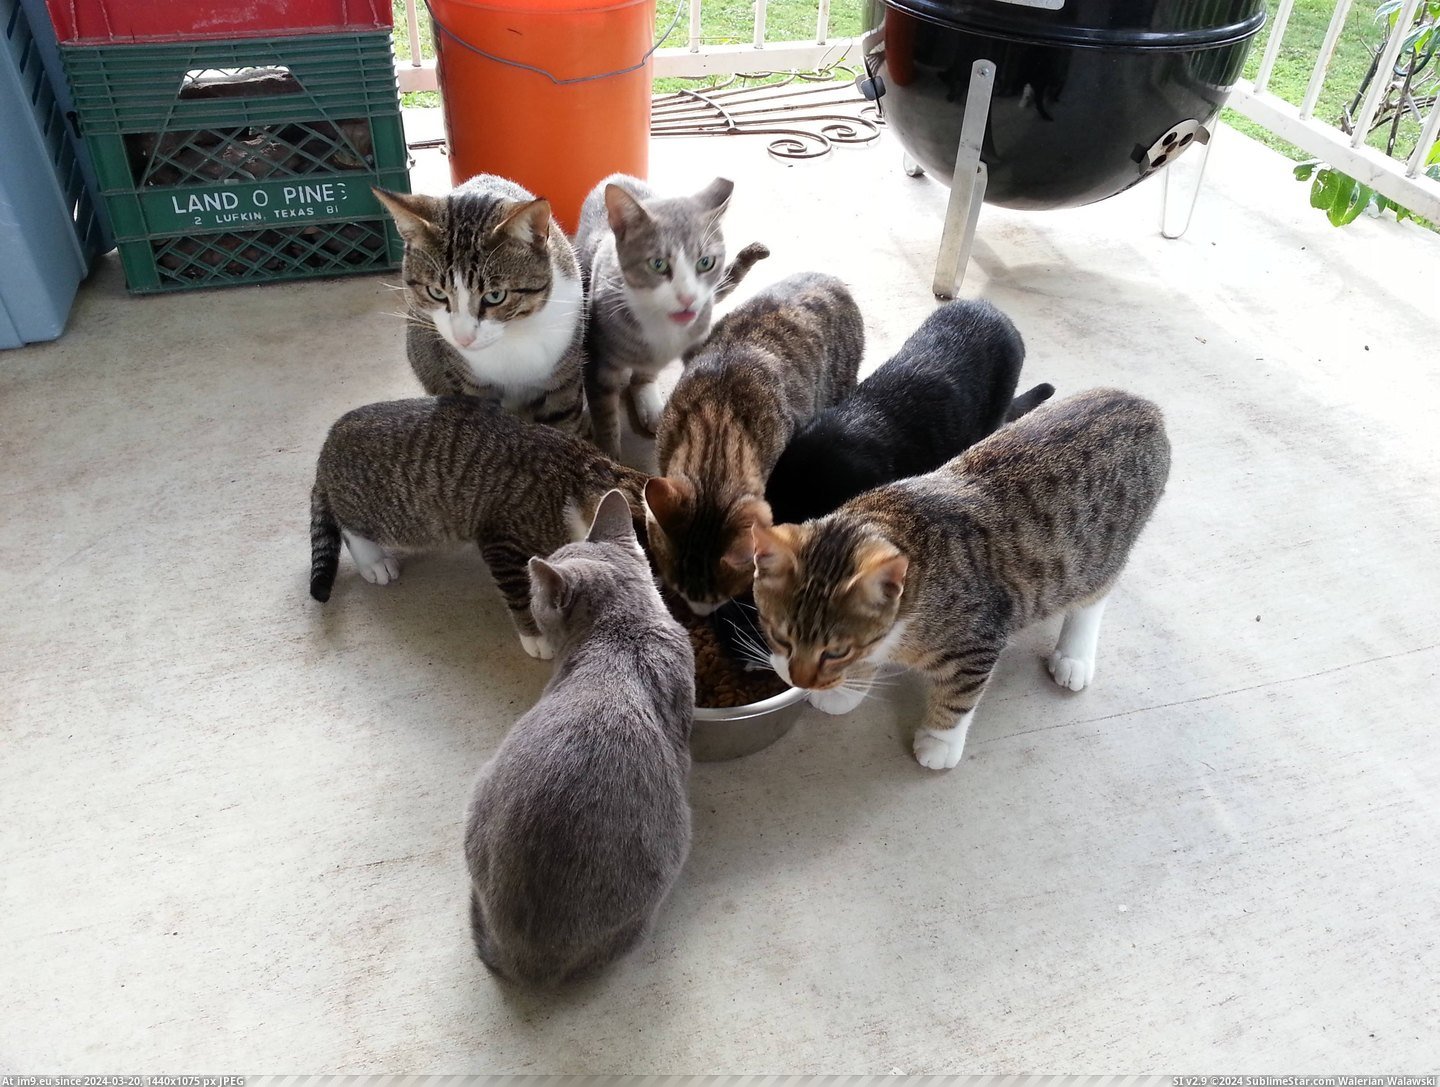 #Cats #Bigger #Bowl [Cats] I think I need a bigger bowl... Pic. (Bild von album My r/CATS favs))